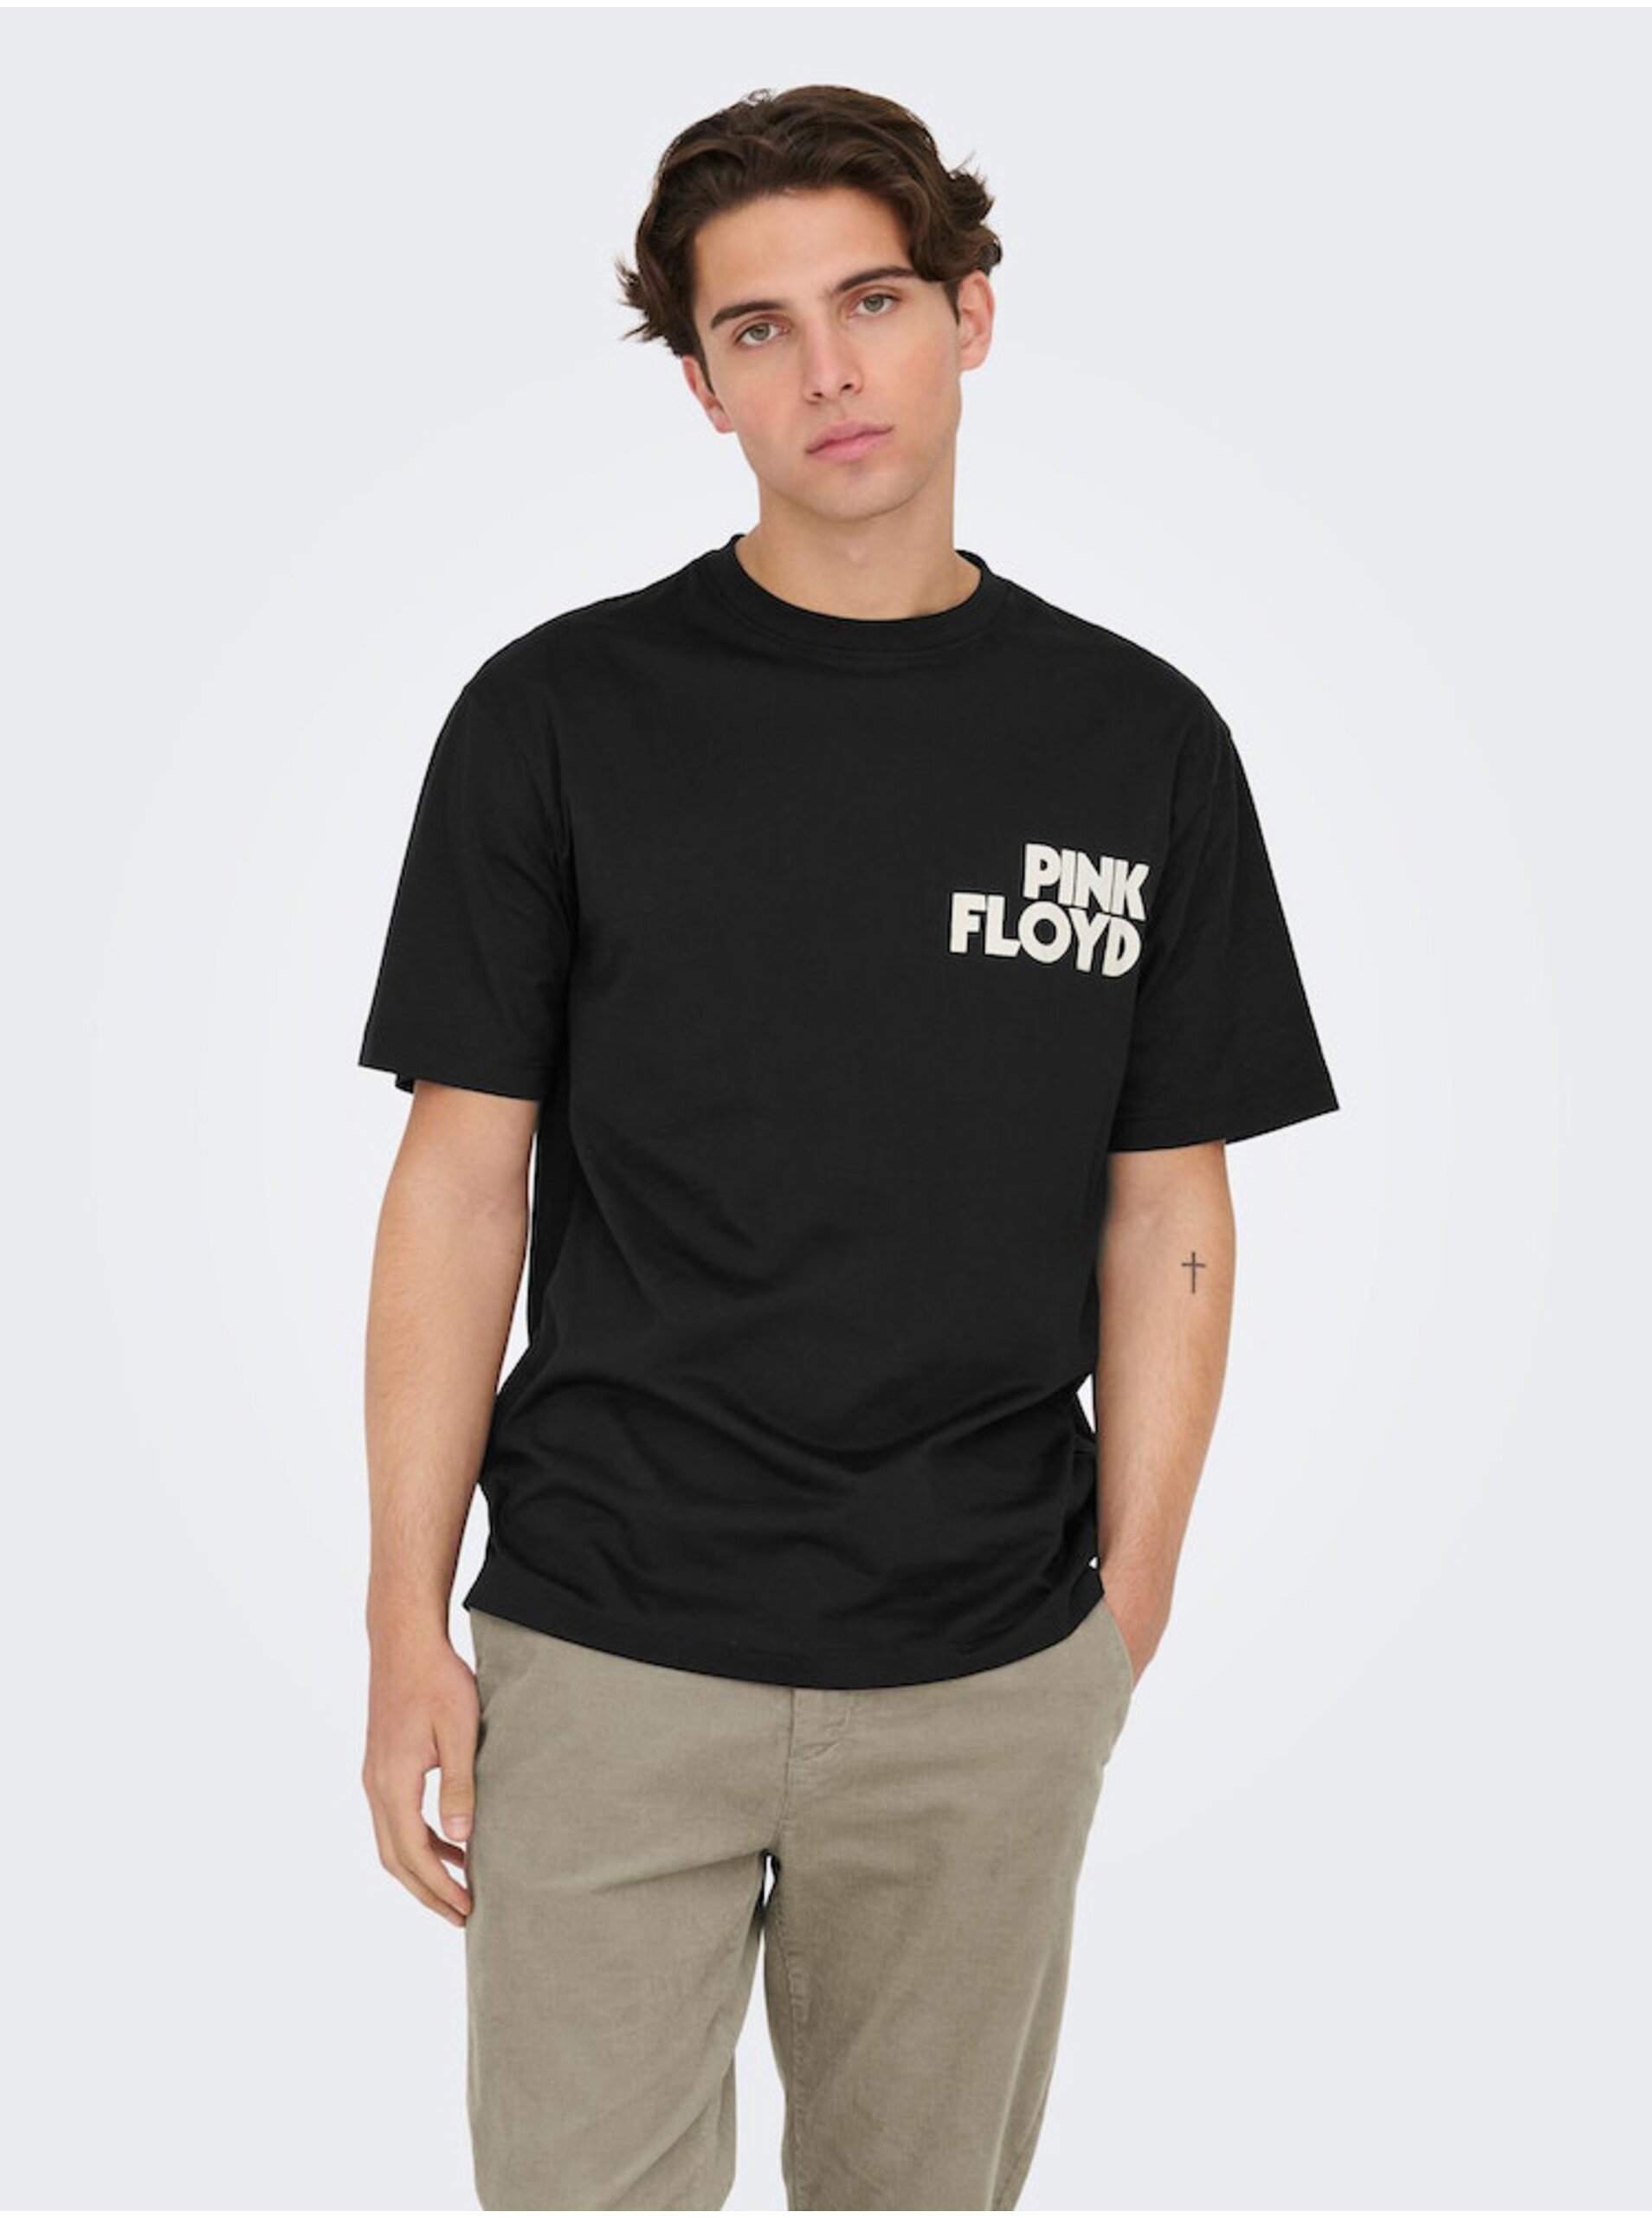 E-shop Čierne pánske tričko s krátkym rukávom ONLY & SONS Pink Floyd